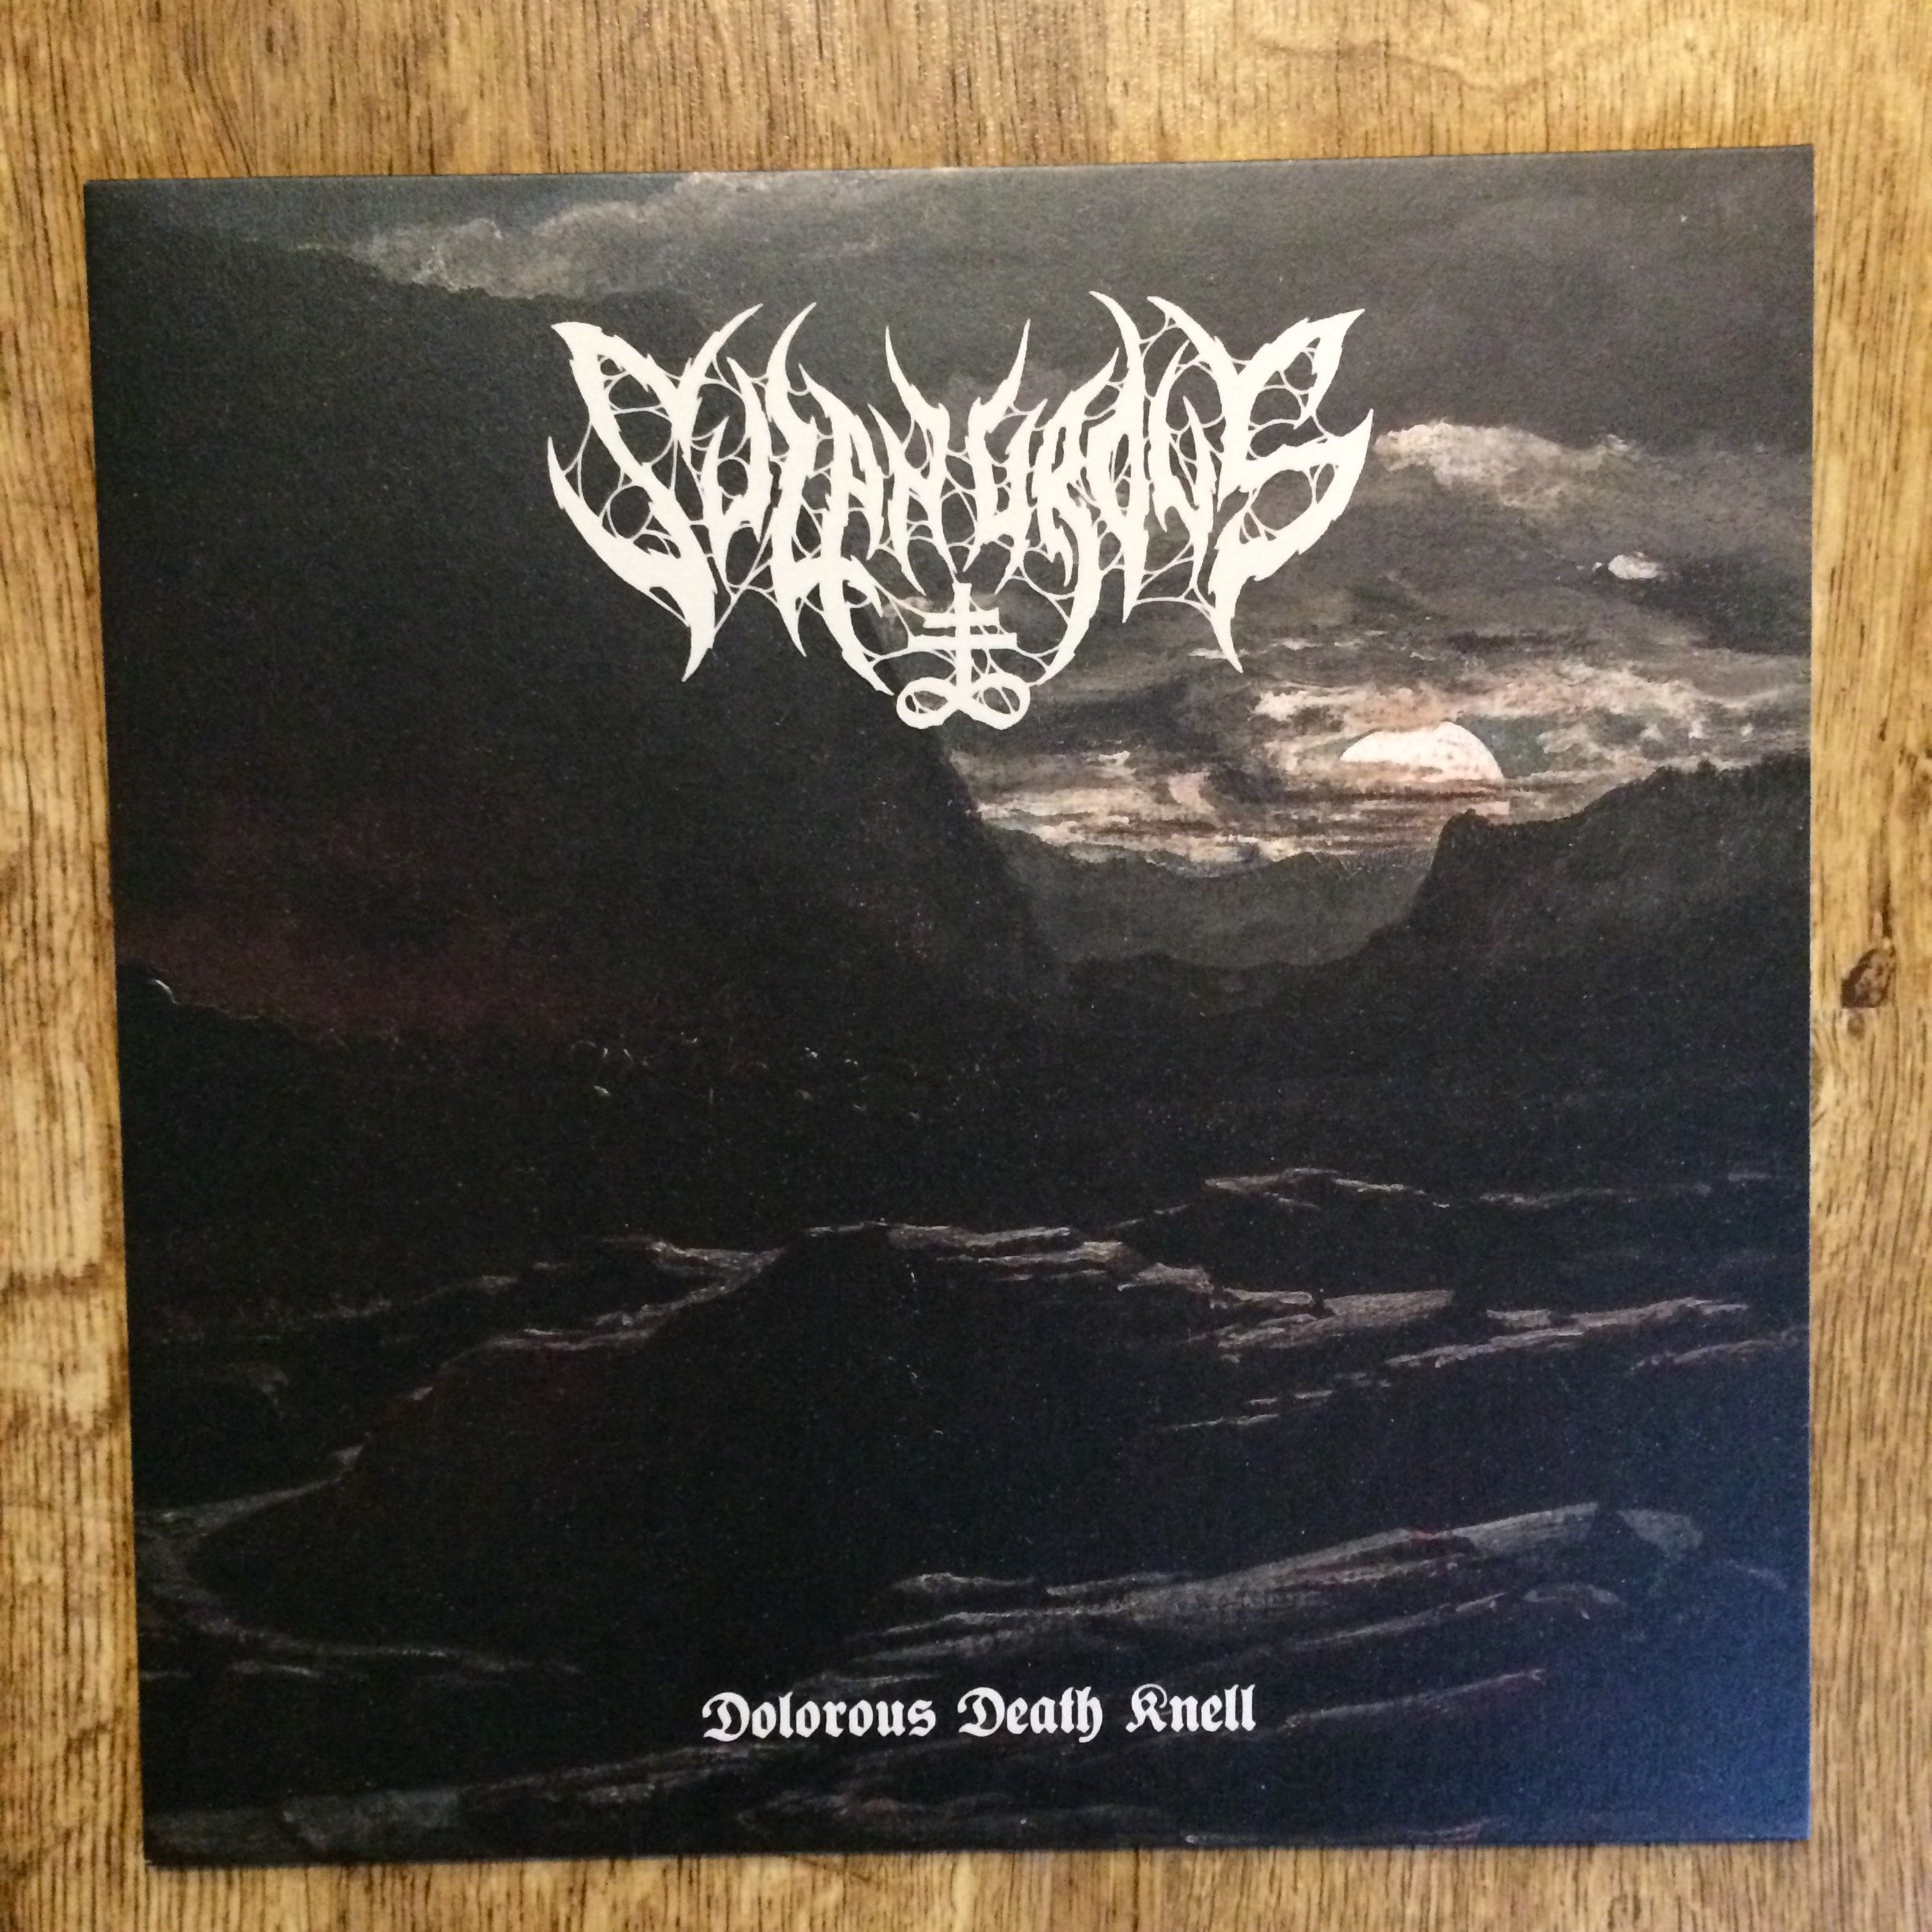 Photo of the Sulphurous - "Dolorous Death Knell" LP (Black vinyl)